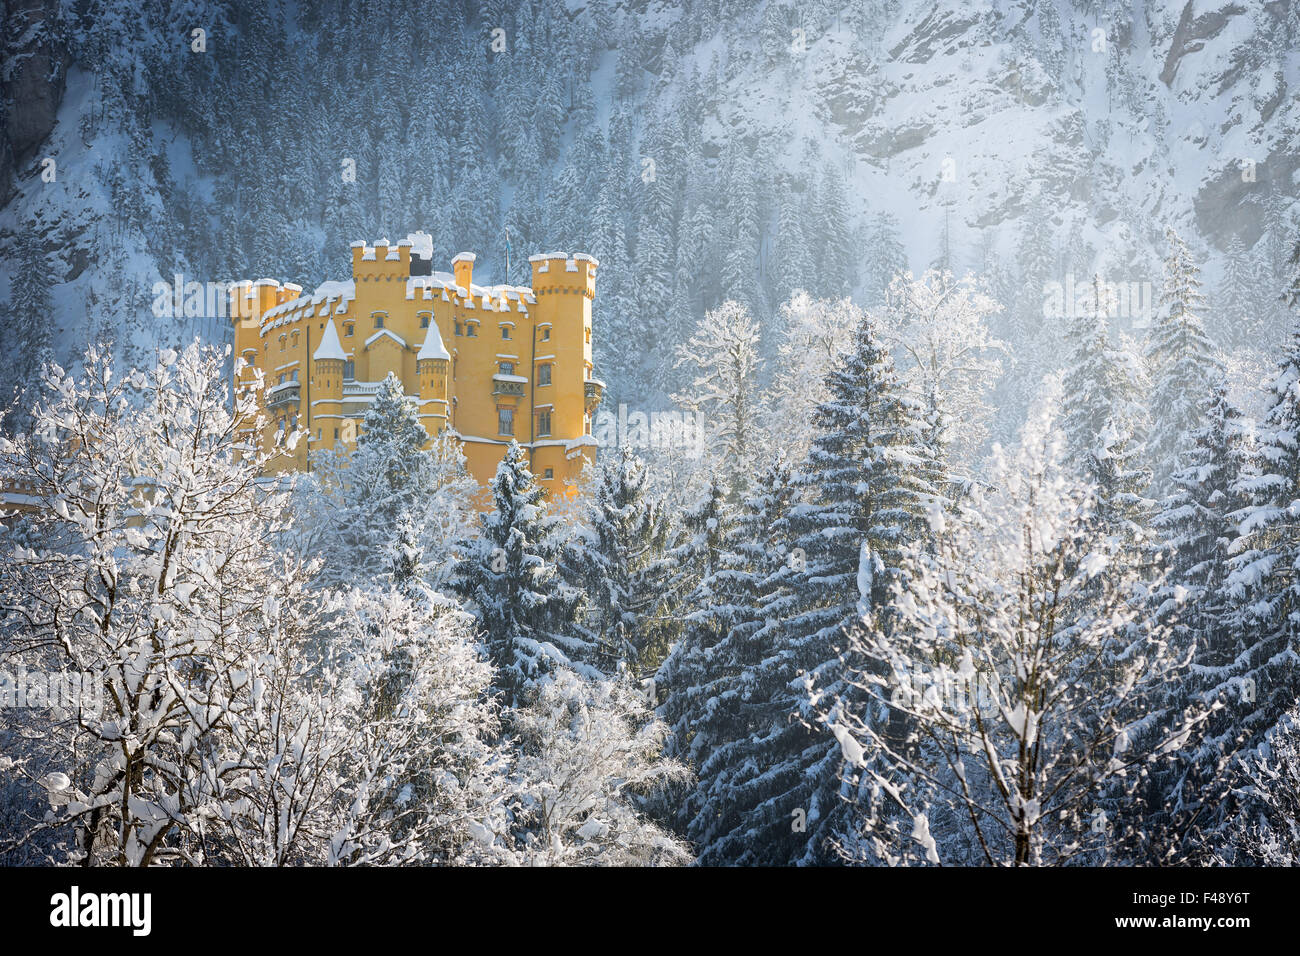 Hohenschwangau Castle in wintery landscape, Germany Stock Photo